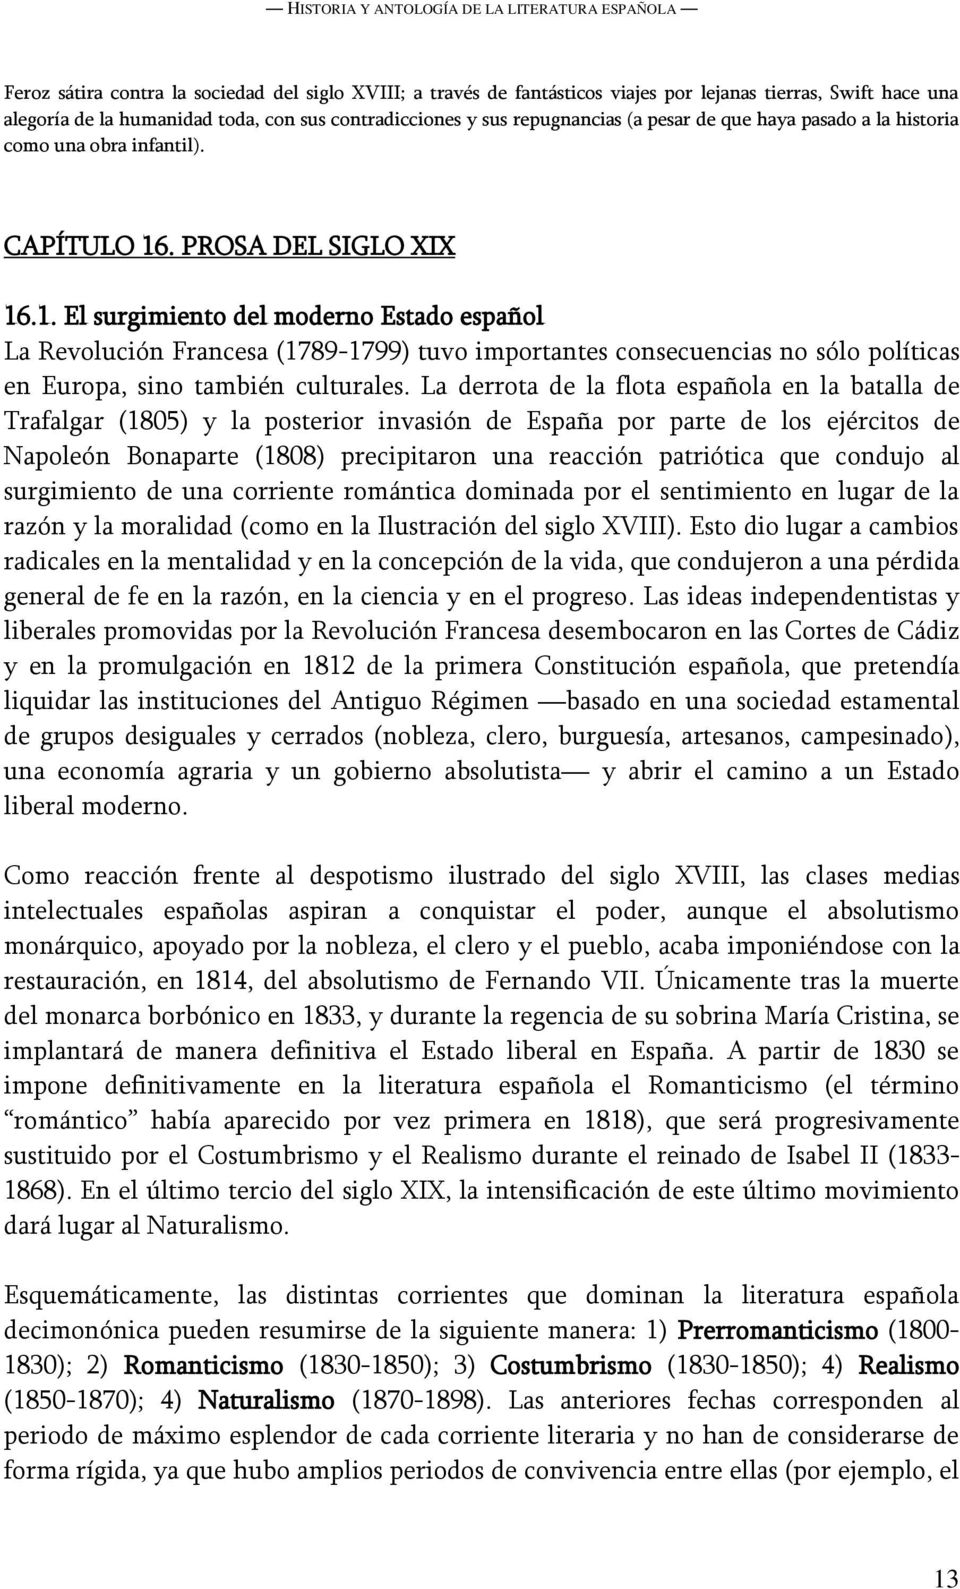 . PROSA DEL SIGLO XIX 16.1. El surgimiento del moderno Estado español La Revolución Francesa (1789-1799) tuvo importantes consecuencias no sólo políticas en Europa, sino también culturales.